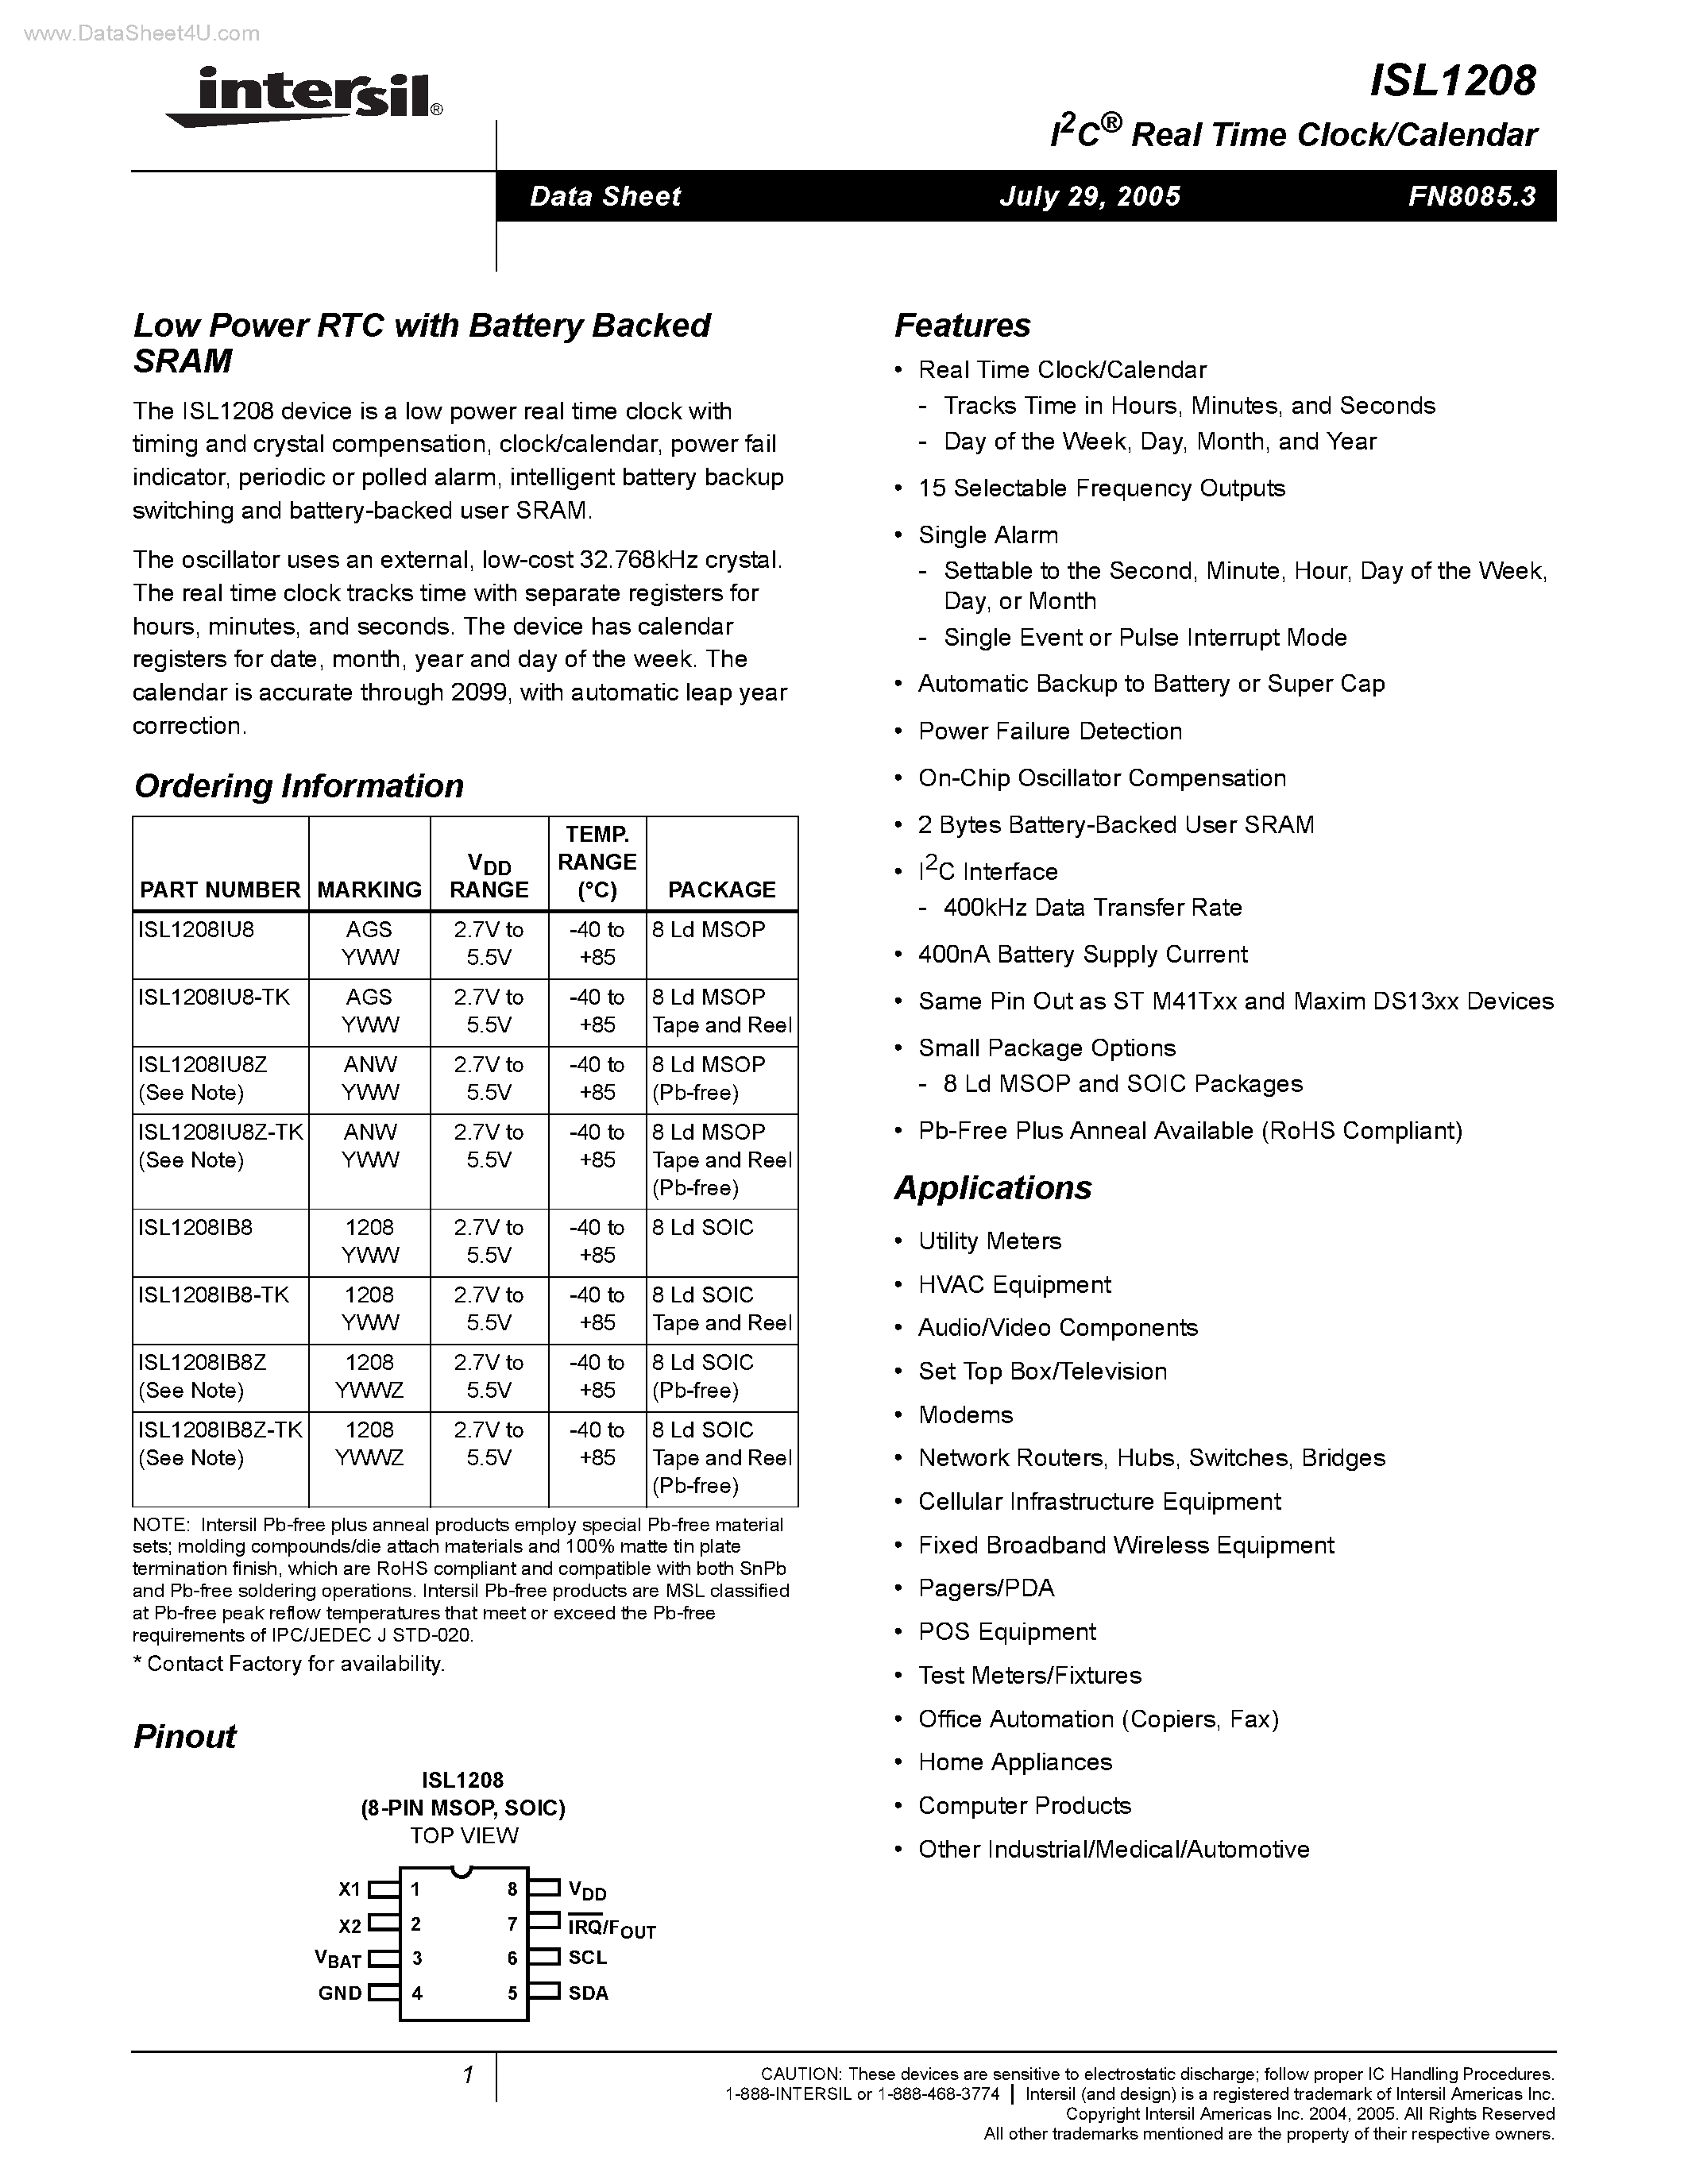 Даташит ISL1208 - I2C Real Time Clock/Calendar страница 1